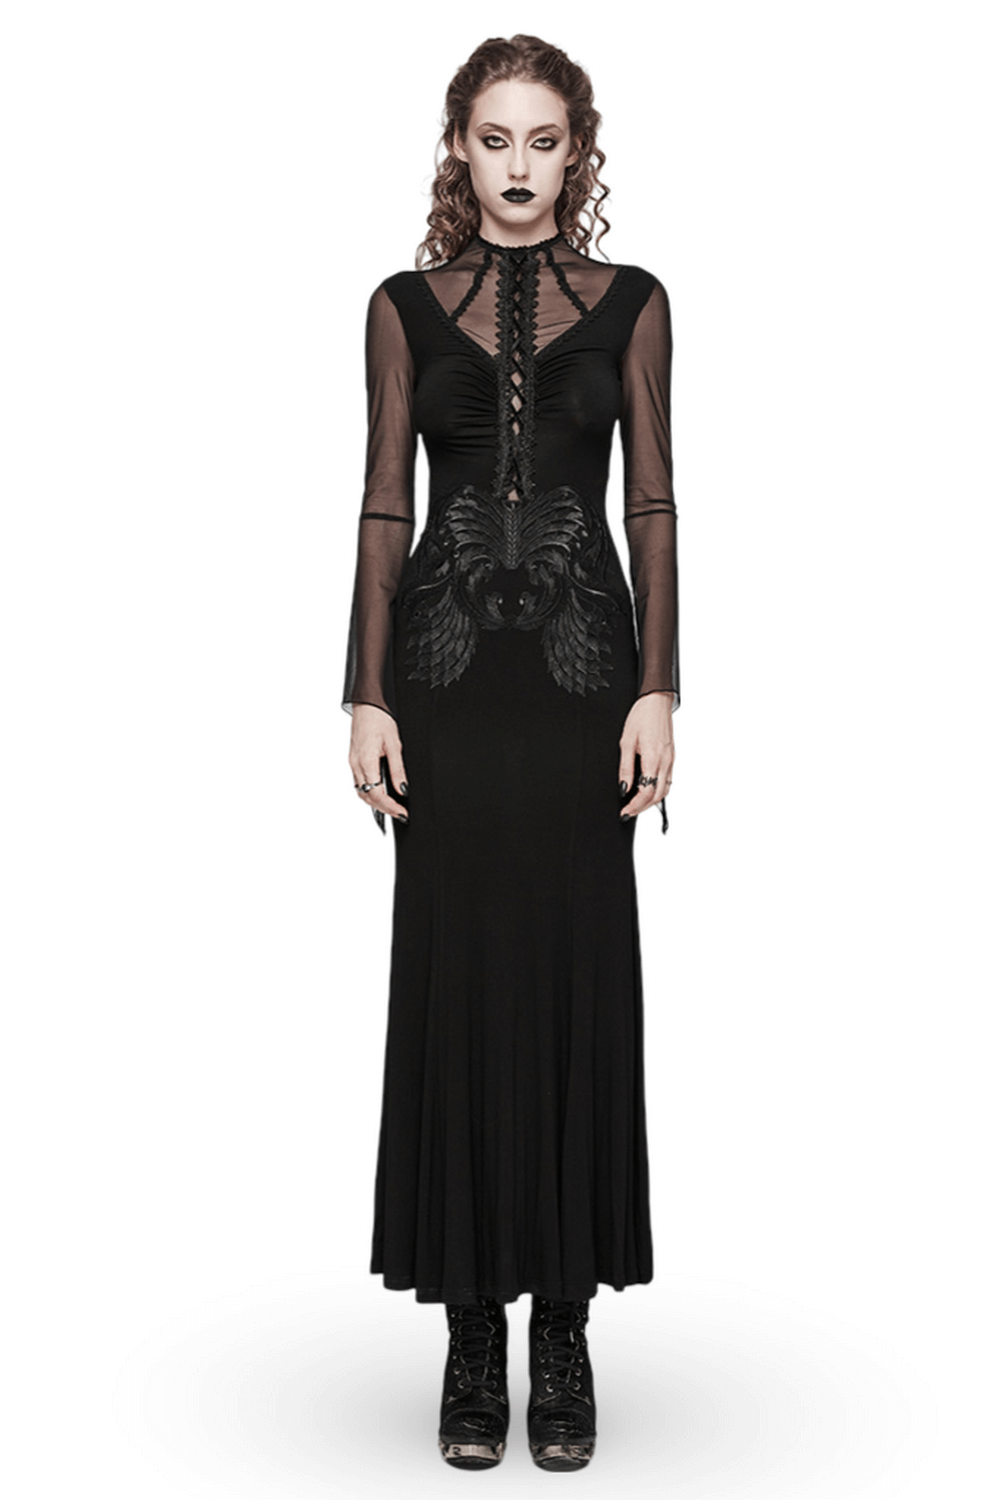 Vestido gótico de malla con encaje y bordado para mujer